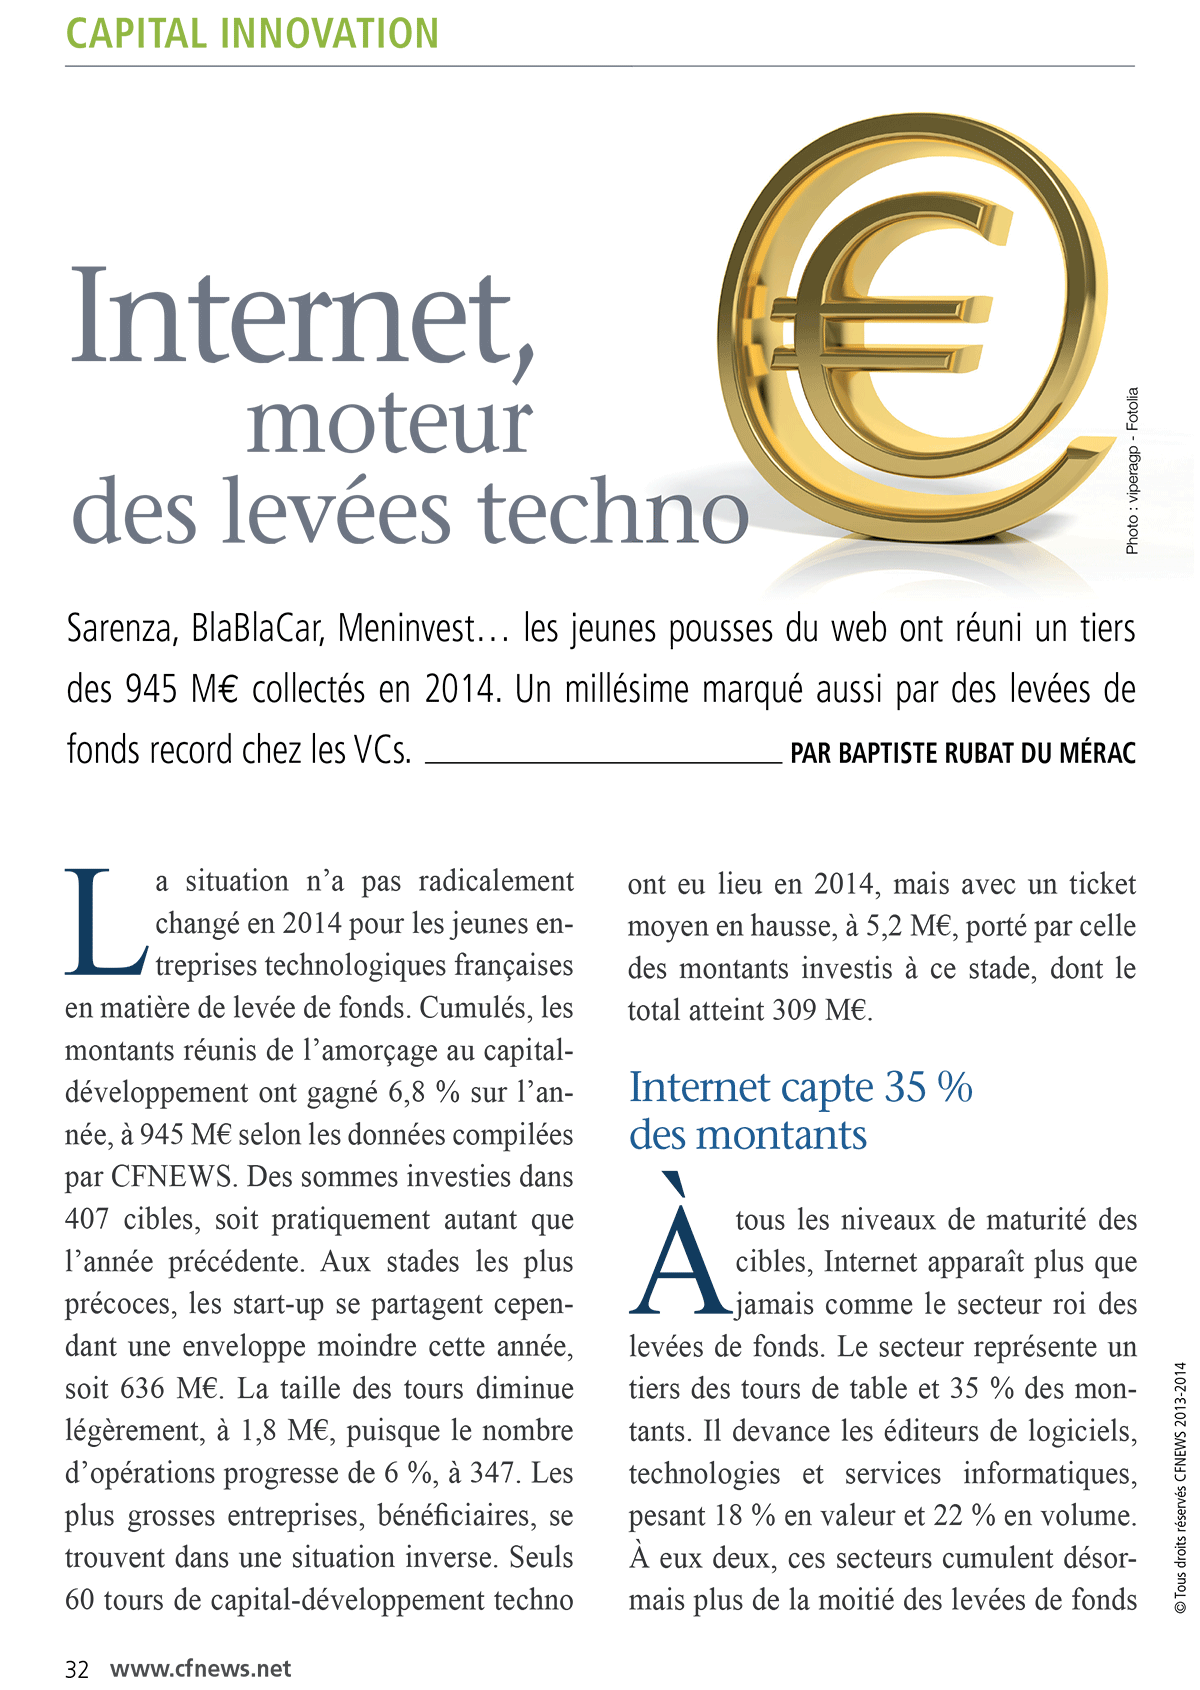 fev2015-internet_moteur_des_levees_techno